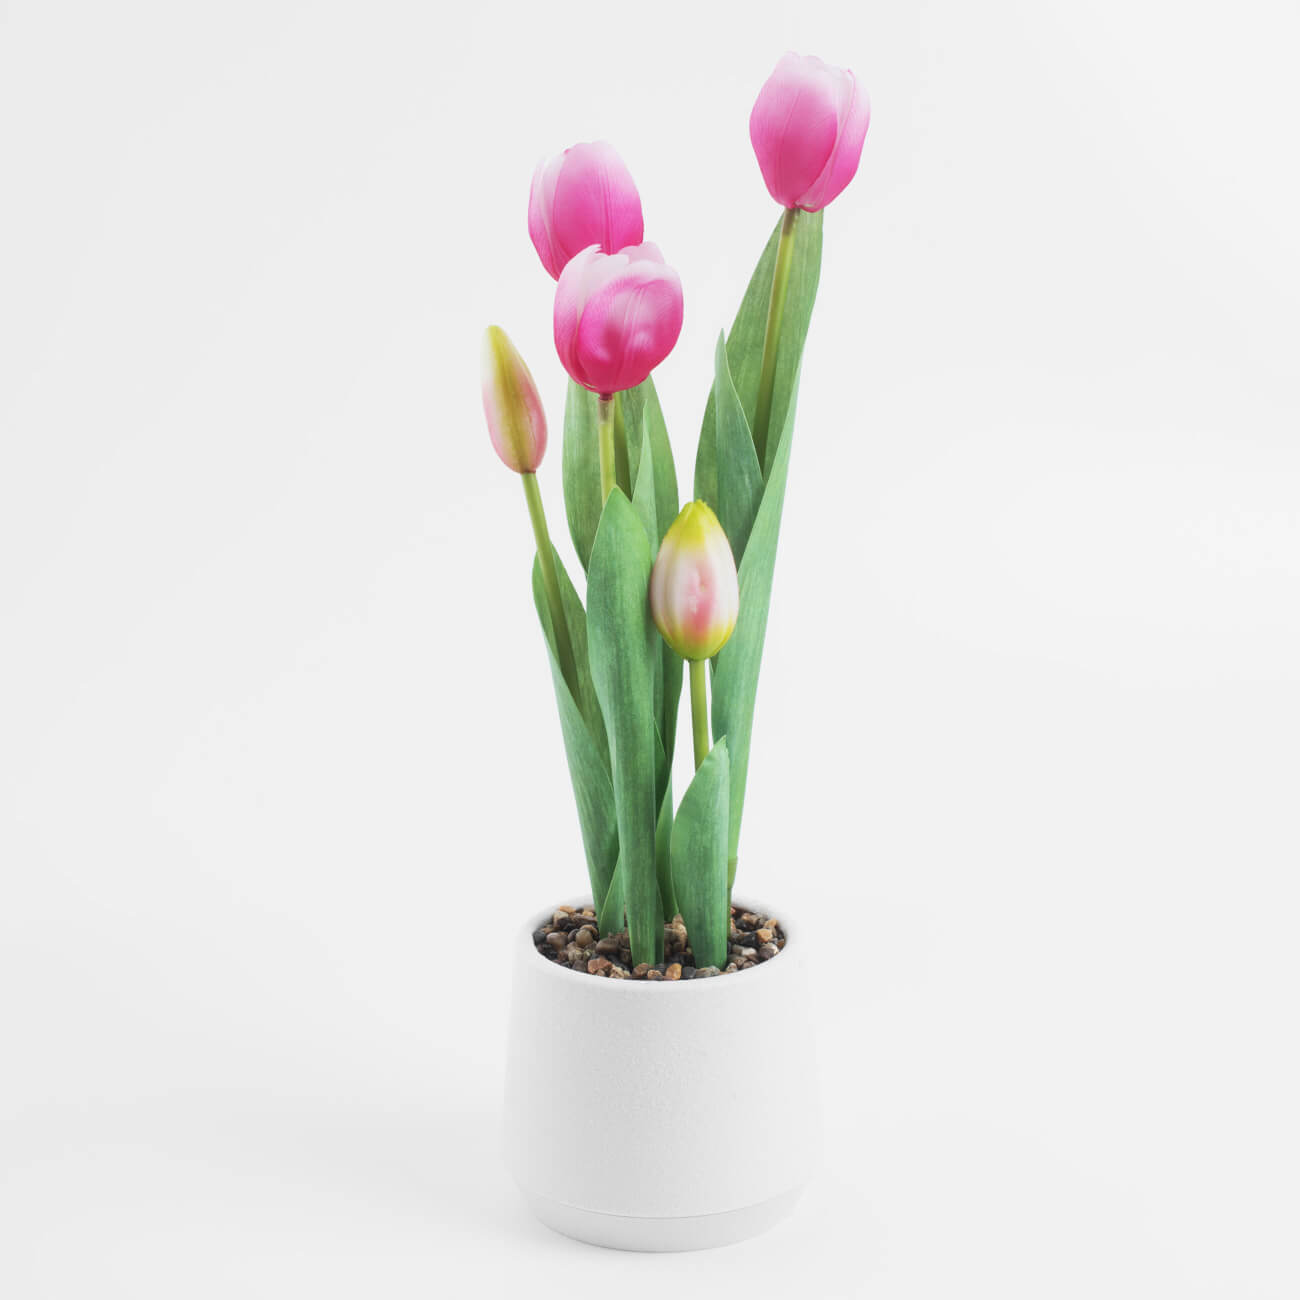 Растение искусственное, 36 см, в горшке, полиэстер/пластик, Розовые тюльпаны, Tulip garden растение искусственное 18 см в горшке пластик металл лаванда lavender